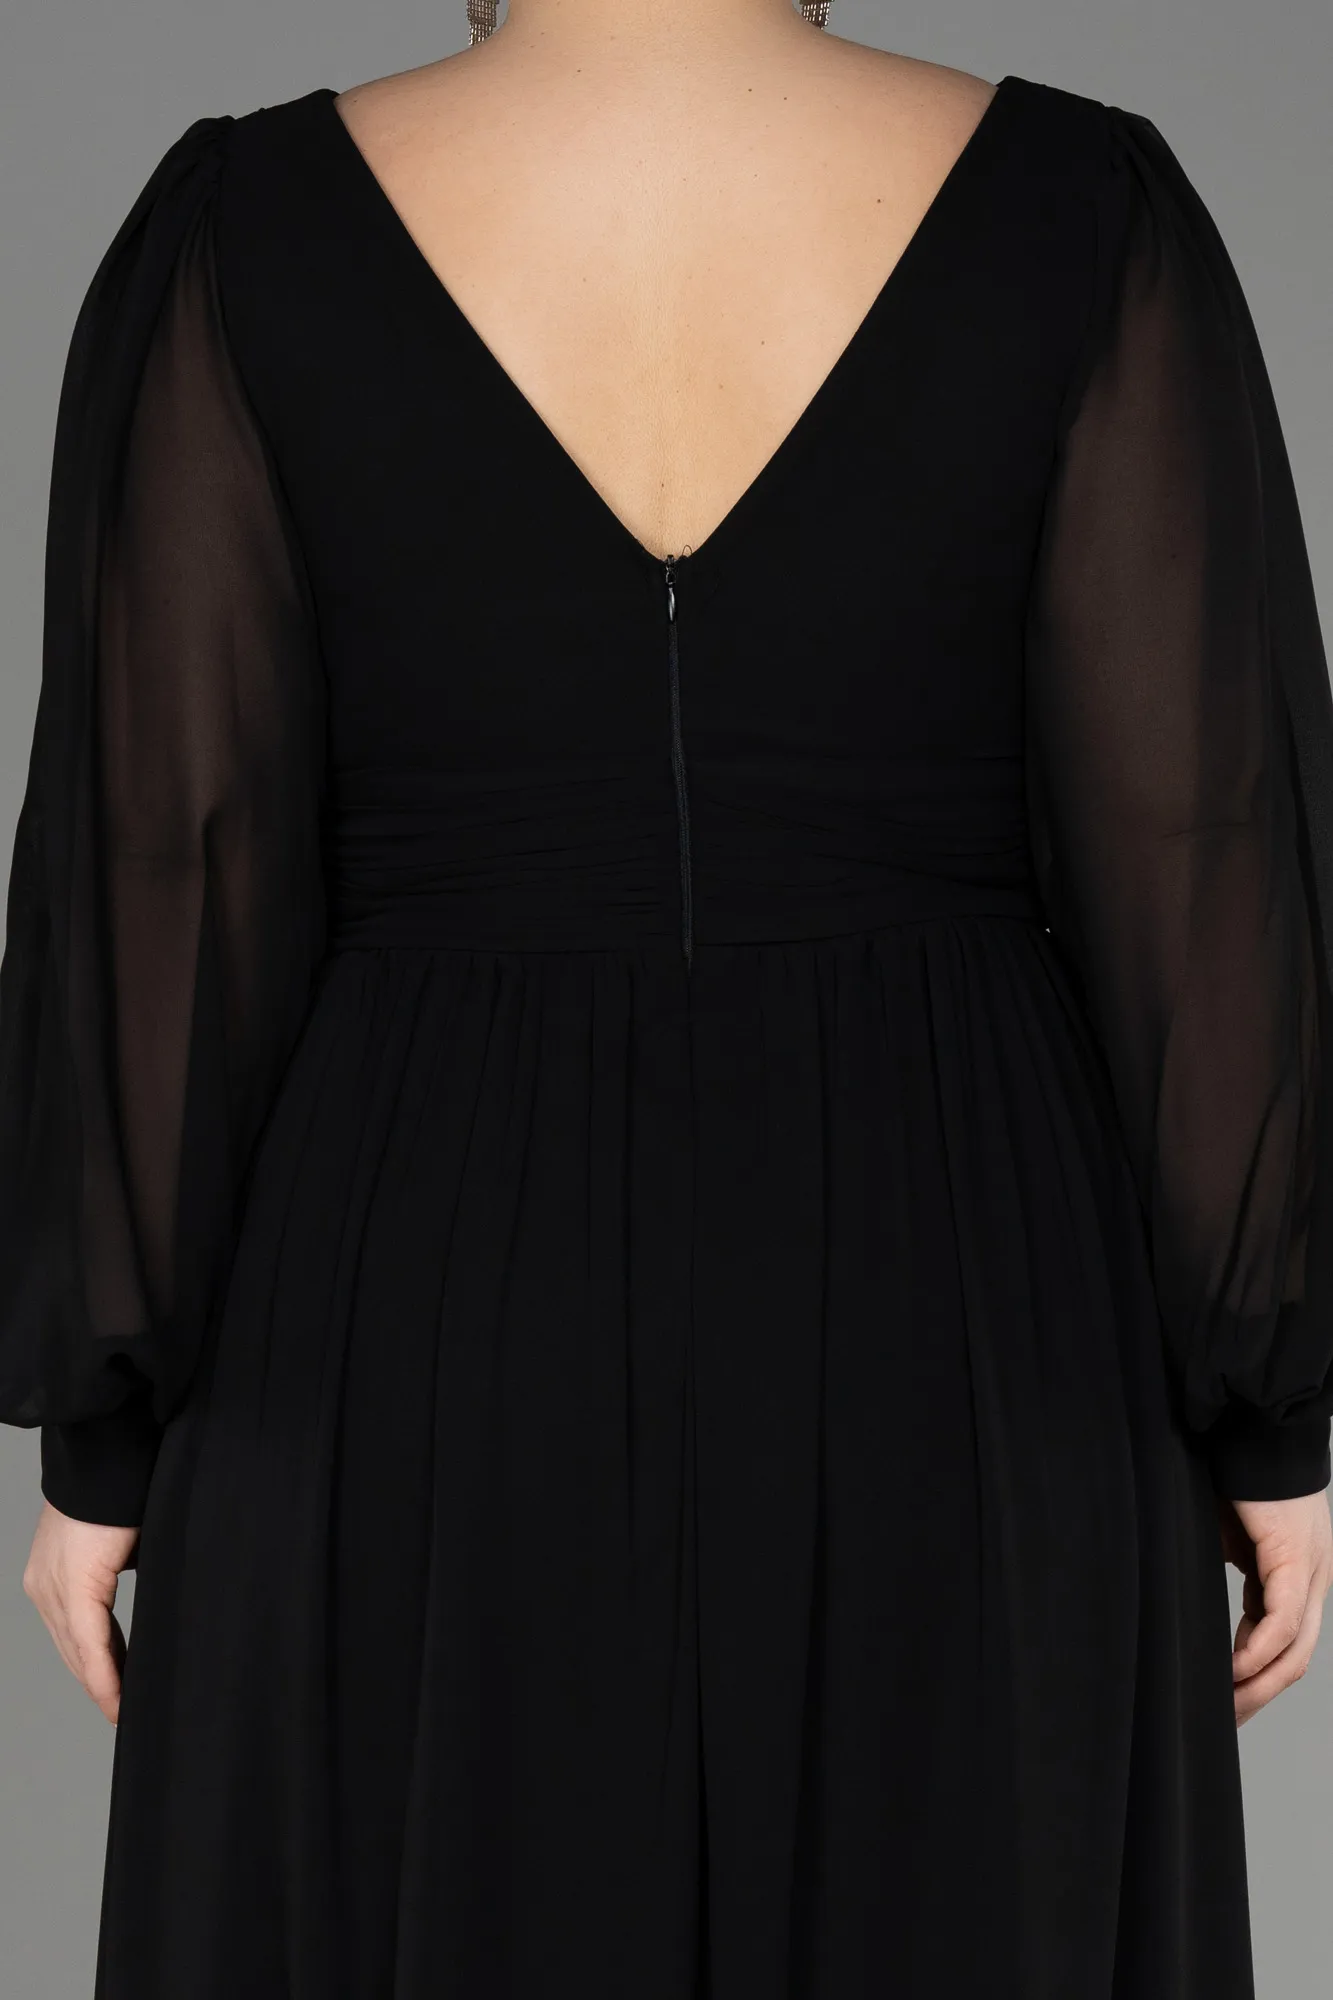 Black-Long Chiffon Oversized Evening Dress ABU1988